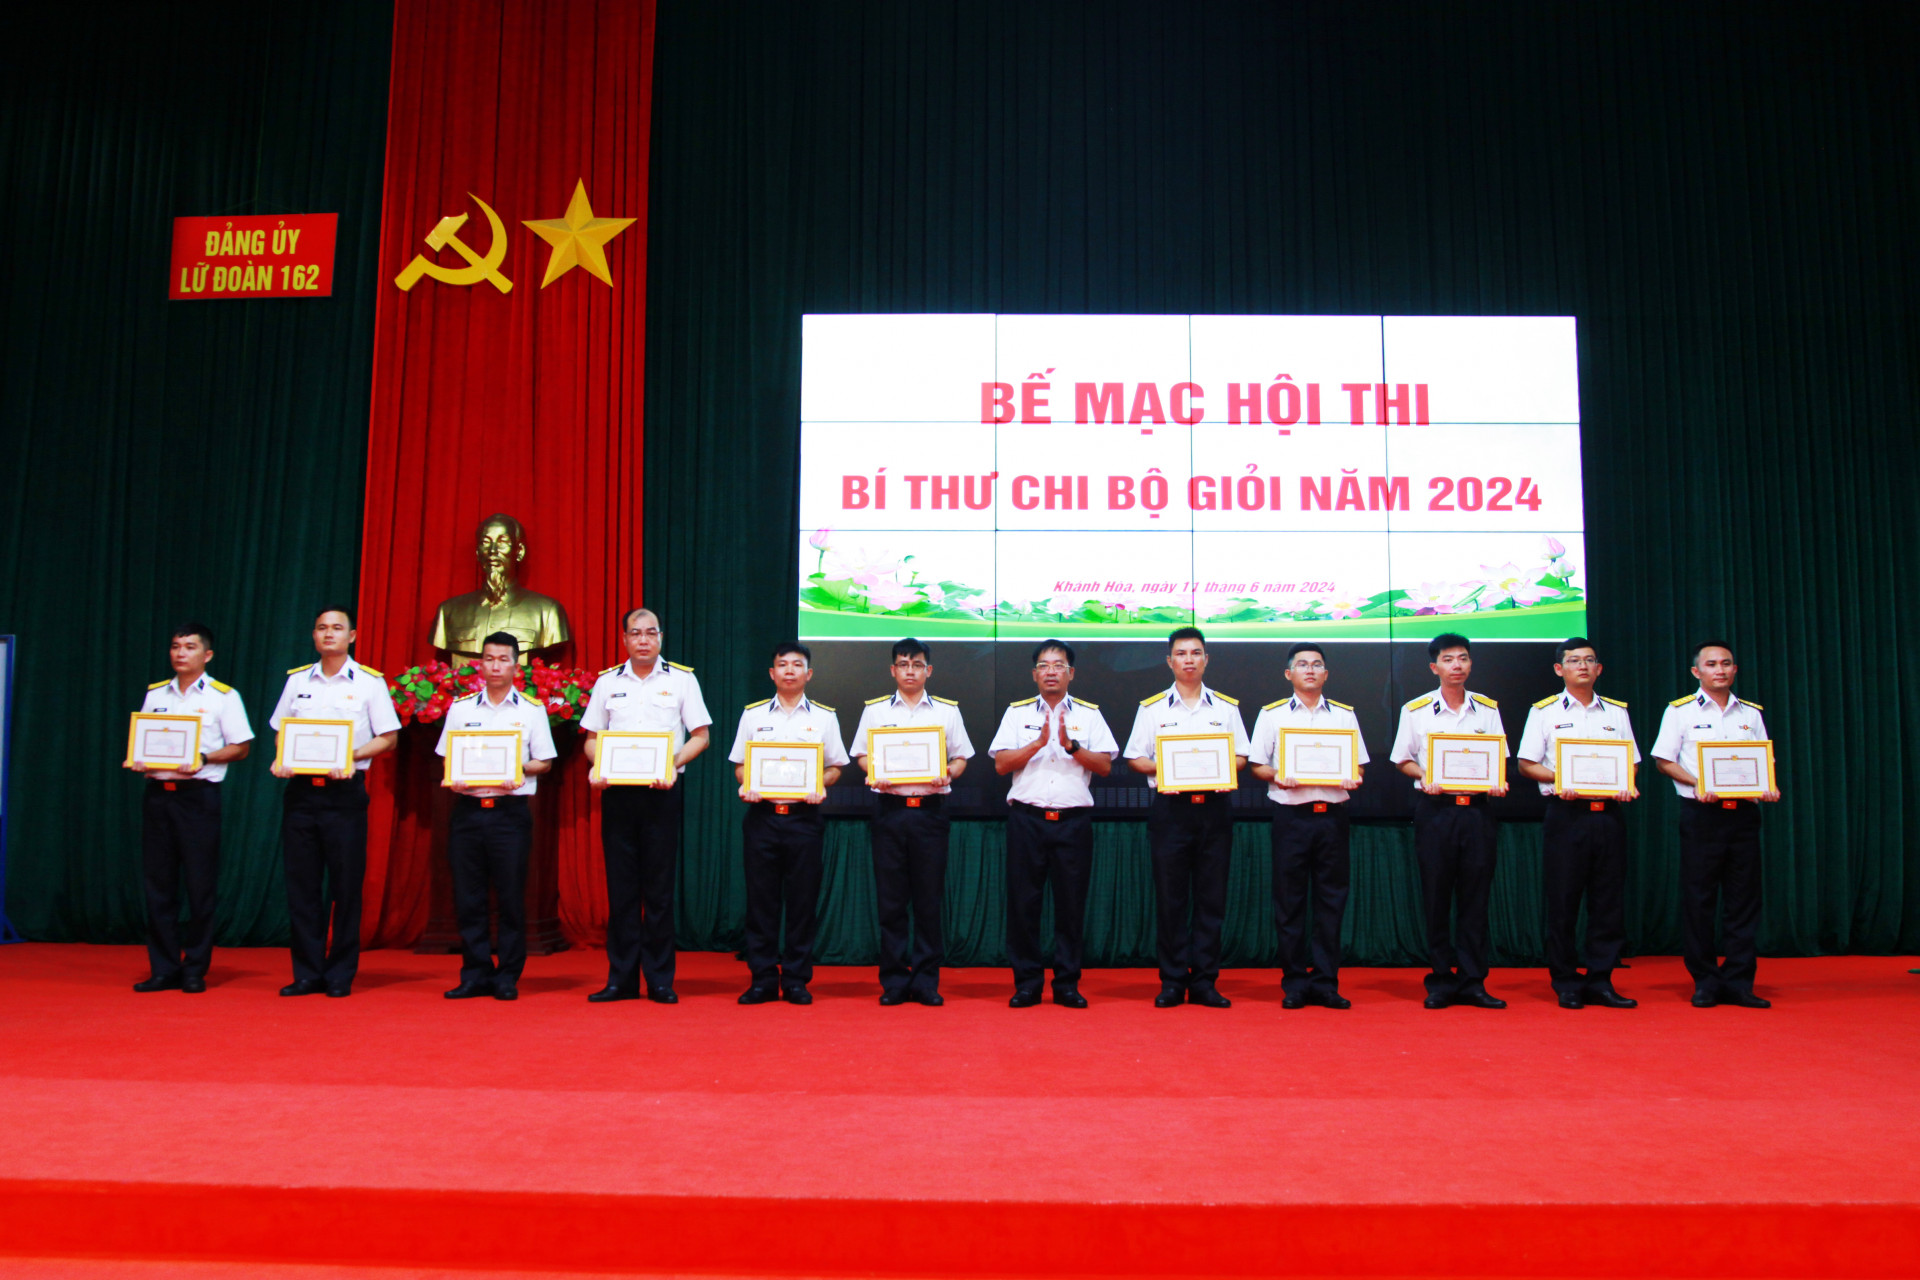 Thượng tá Mai Văn Doanh - Bí thư Đảng ủy, Chính ủy Lữ đoàn 162 trao giải cho các thí sinh.

